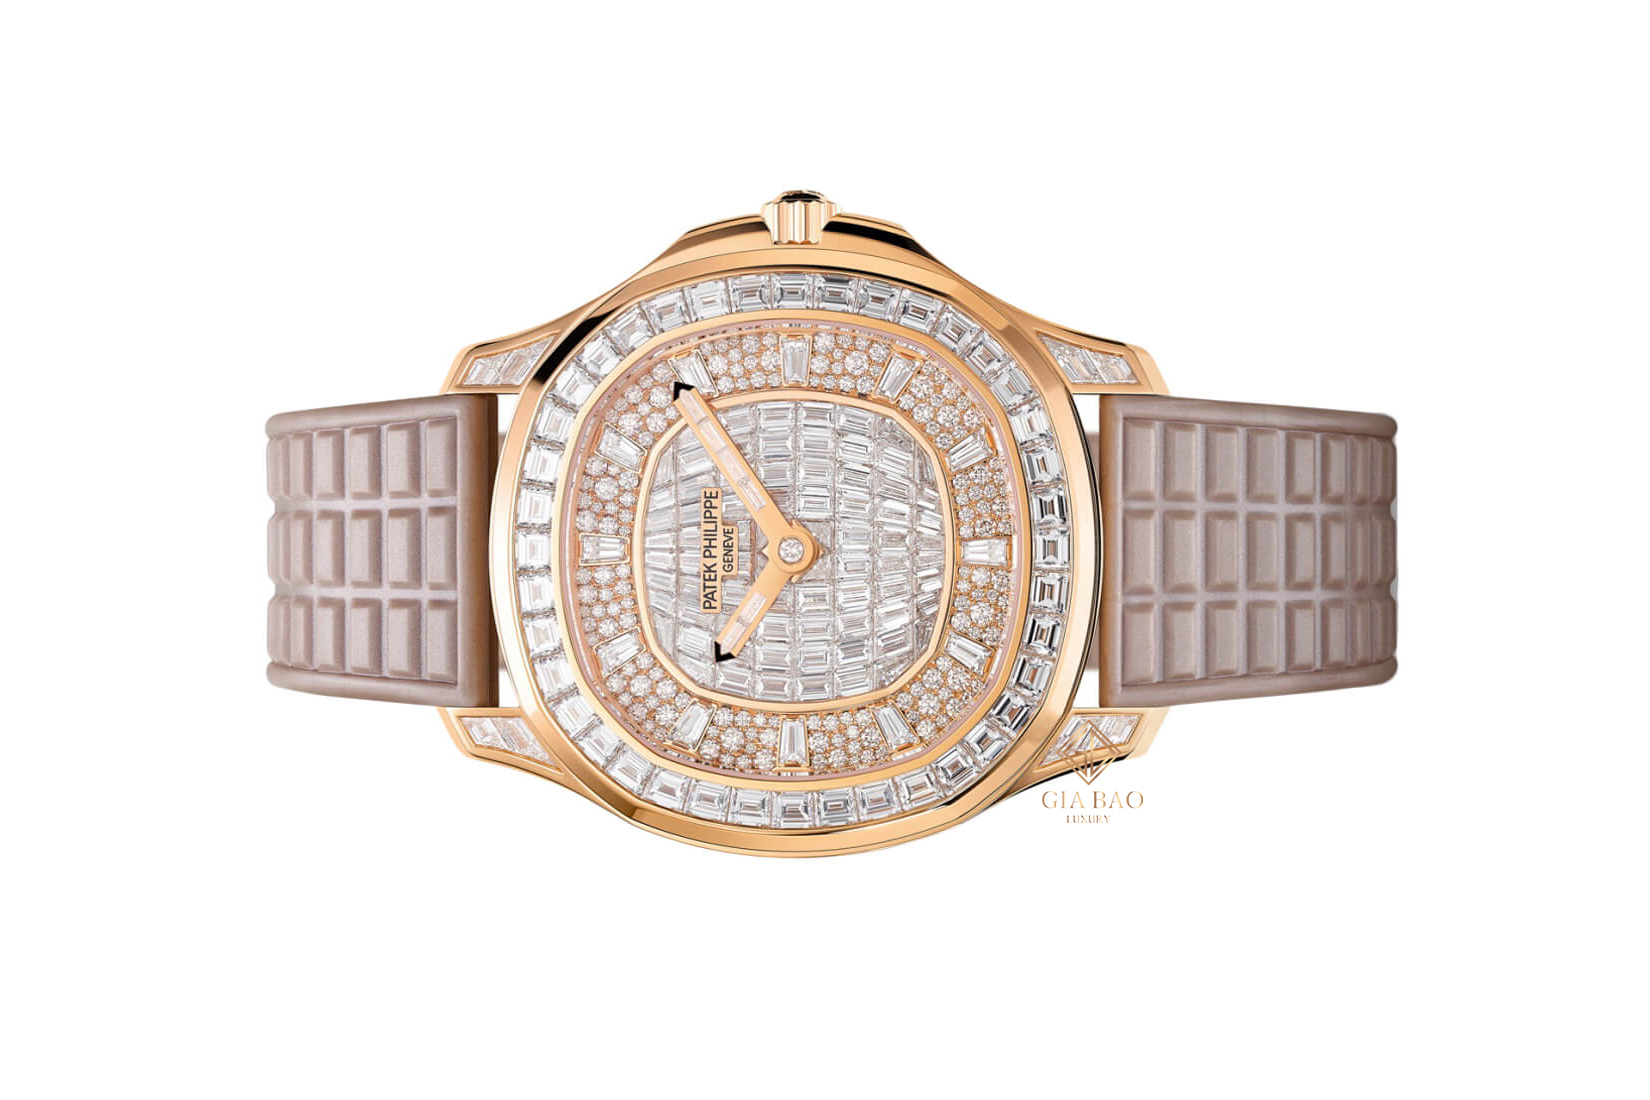 Thiết kế đồng hồ Patek Philippe replica bản 5062/450R full kim cương đầy mê hoặc